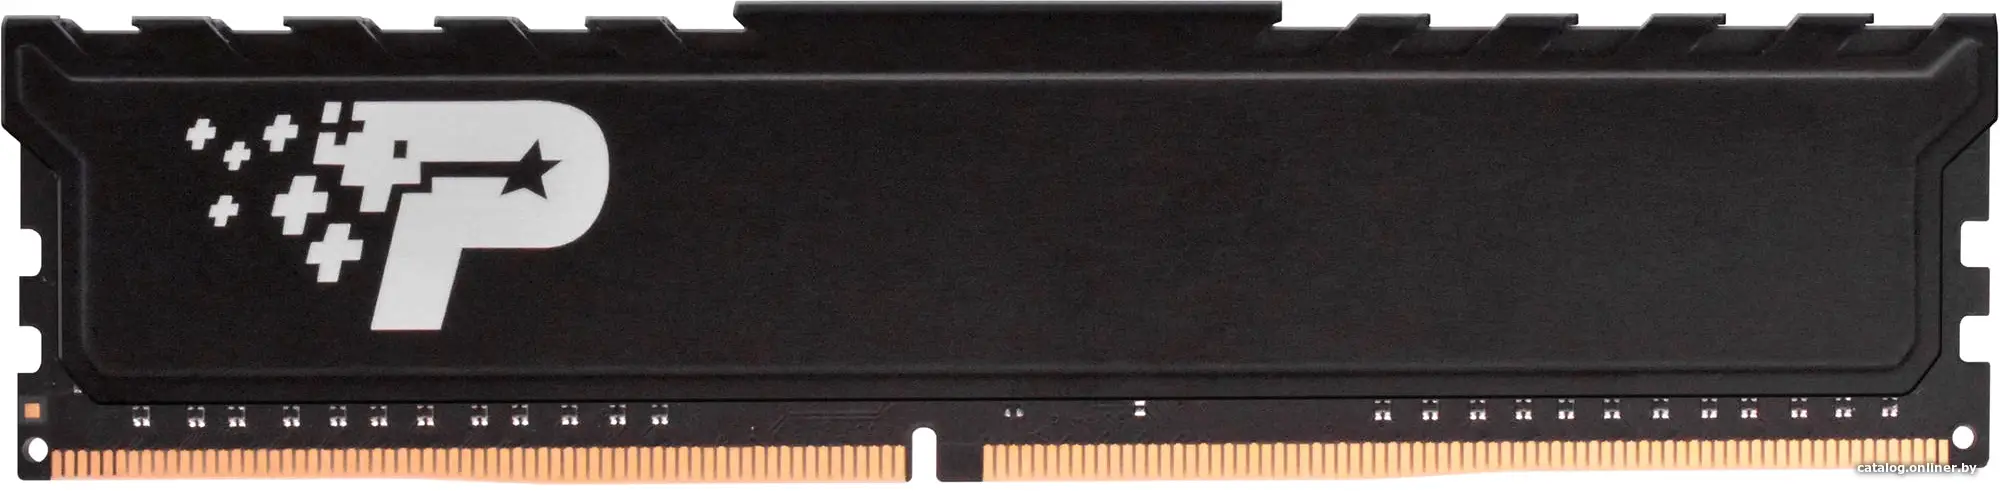 Оперативная память Patriot DDR4 16Gb 3200MHz (PSP416G32002H1)